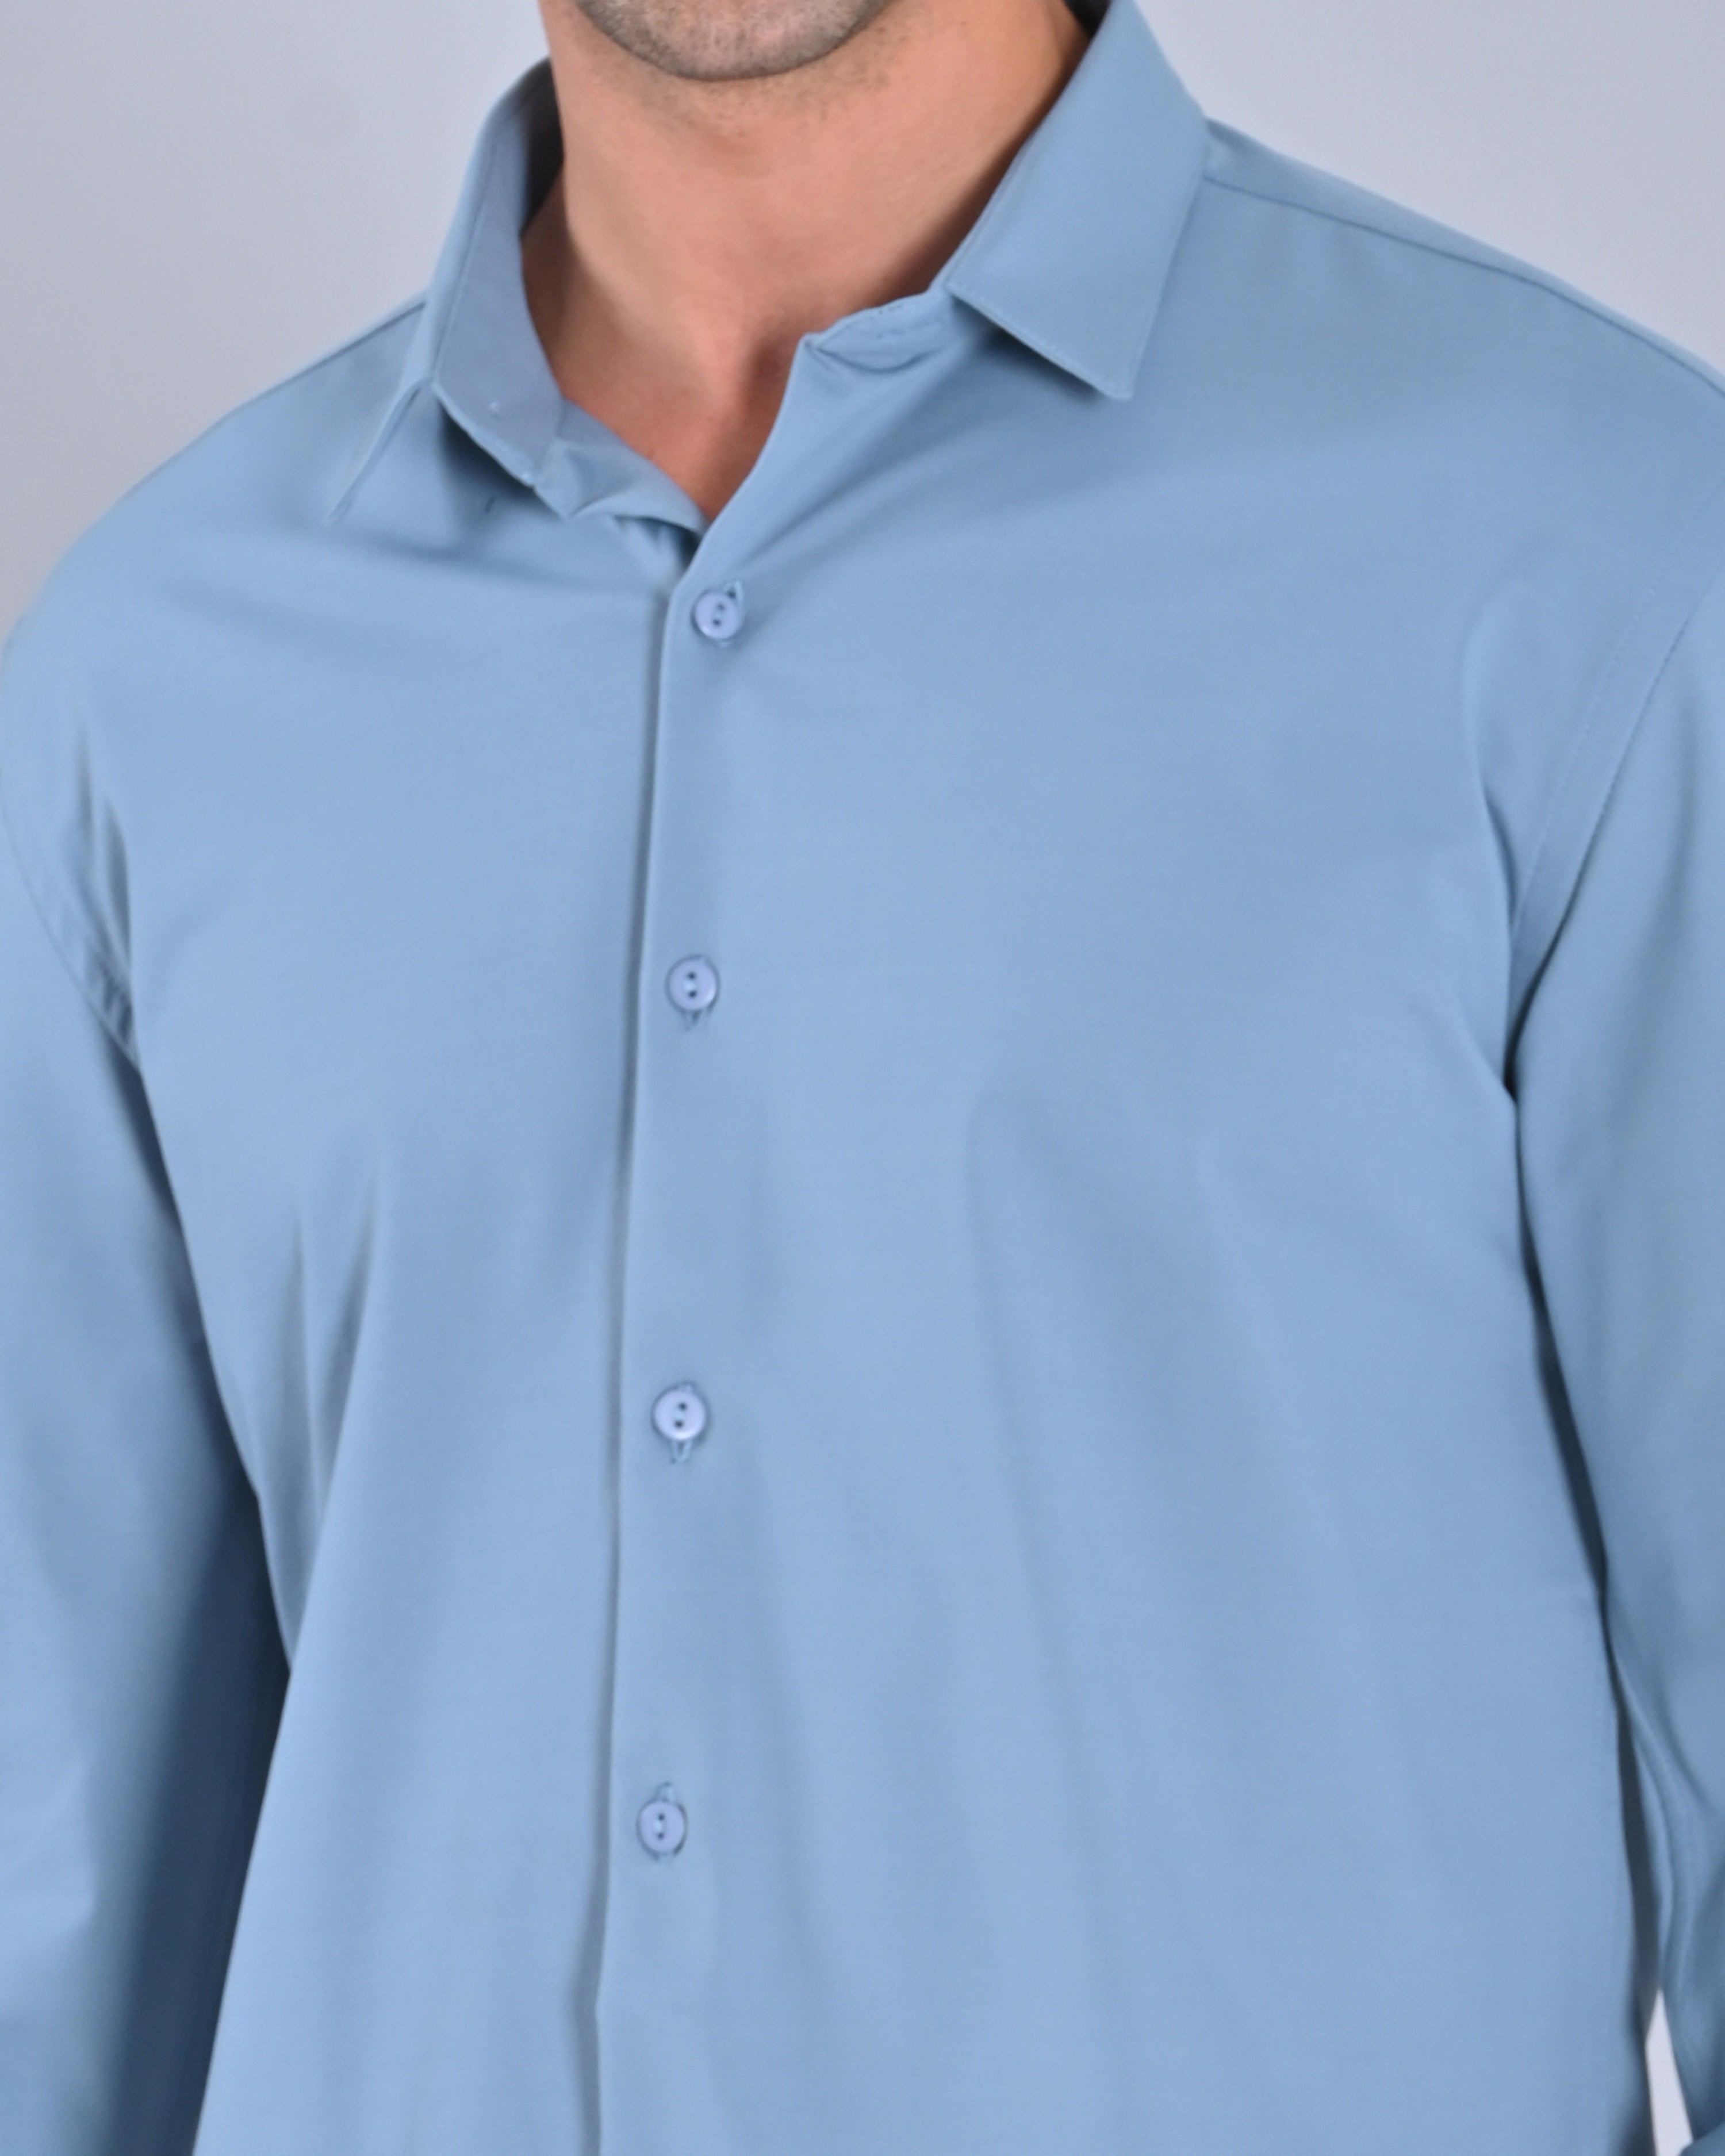 Buy Sky Blue Men's Shirt Online